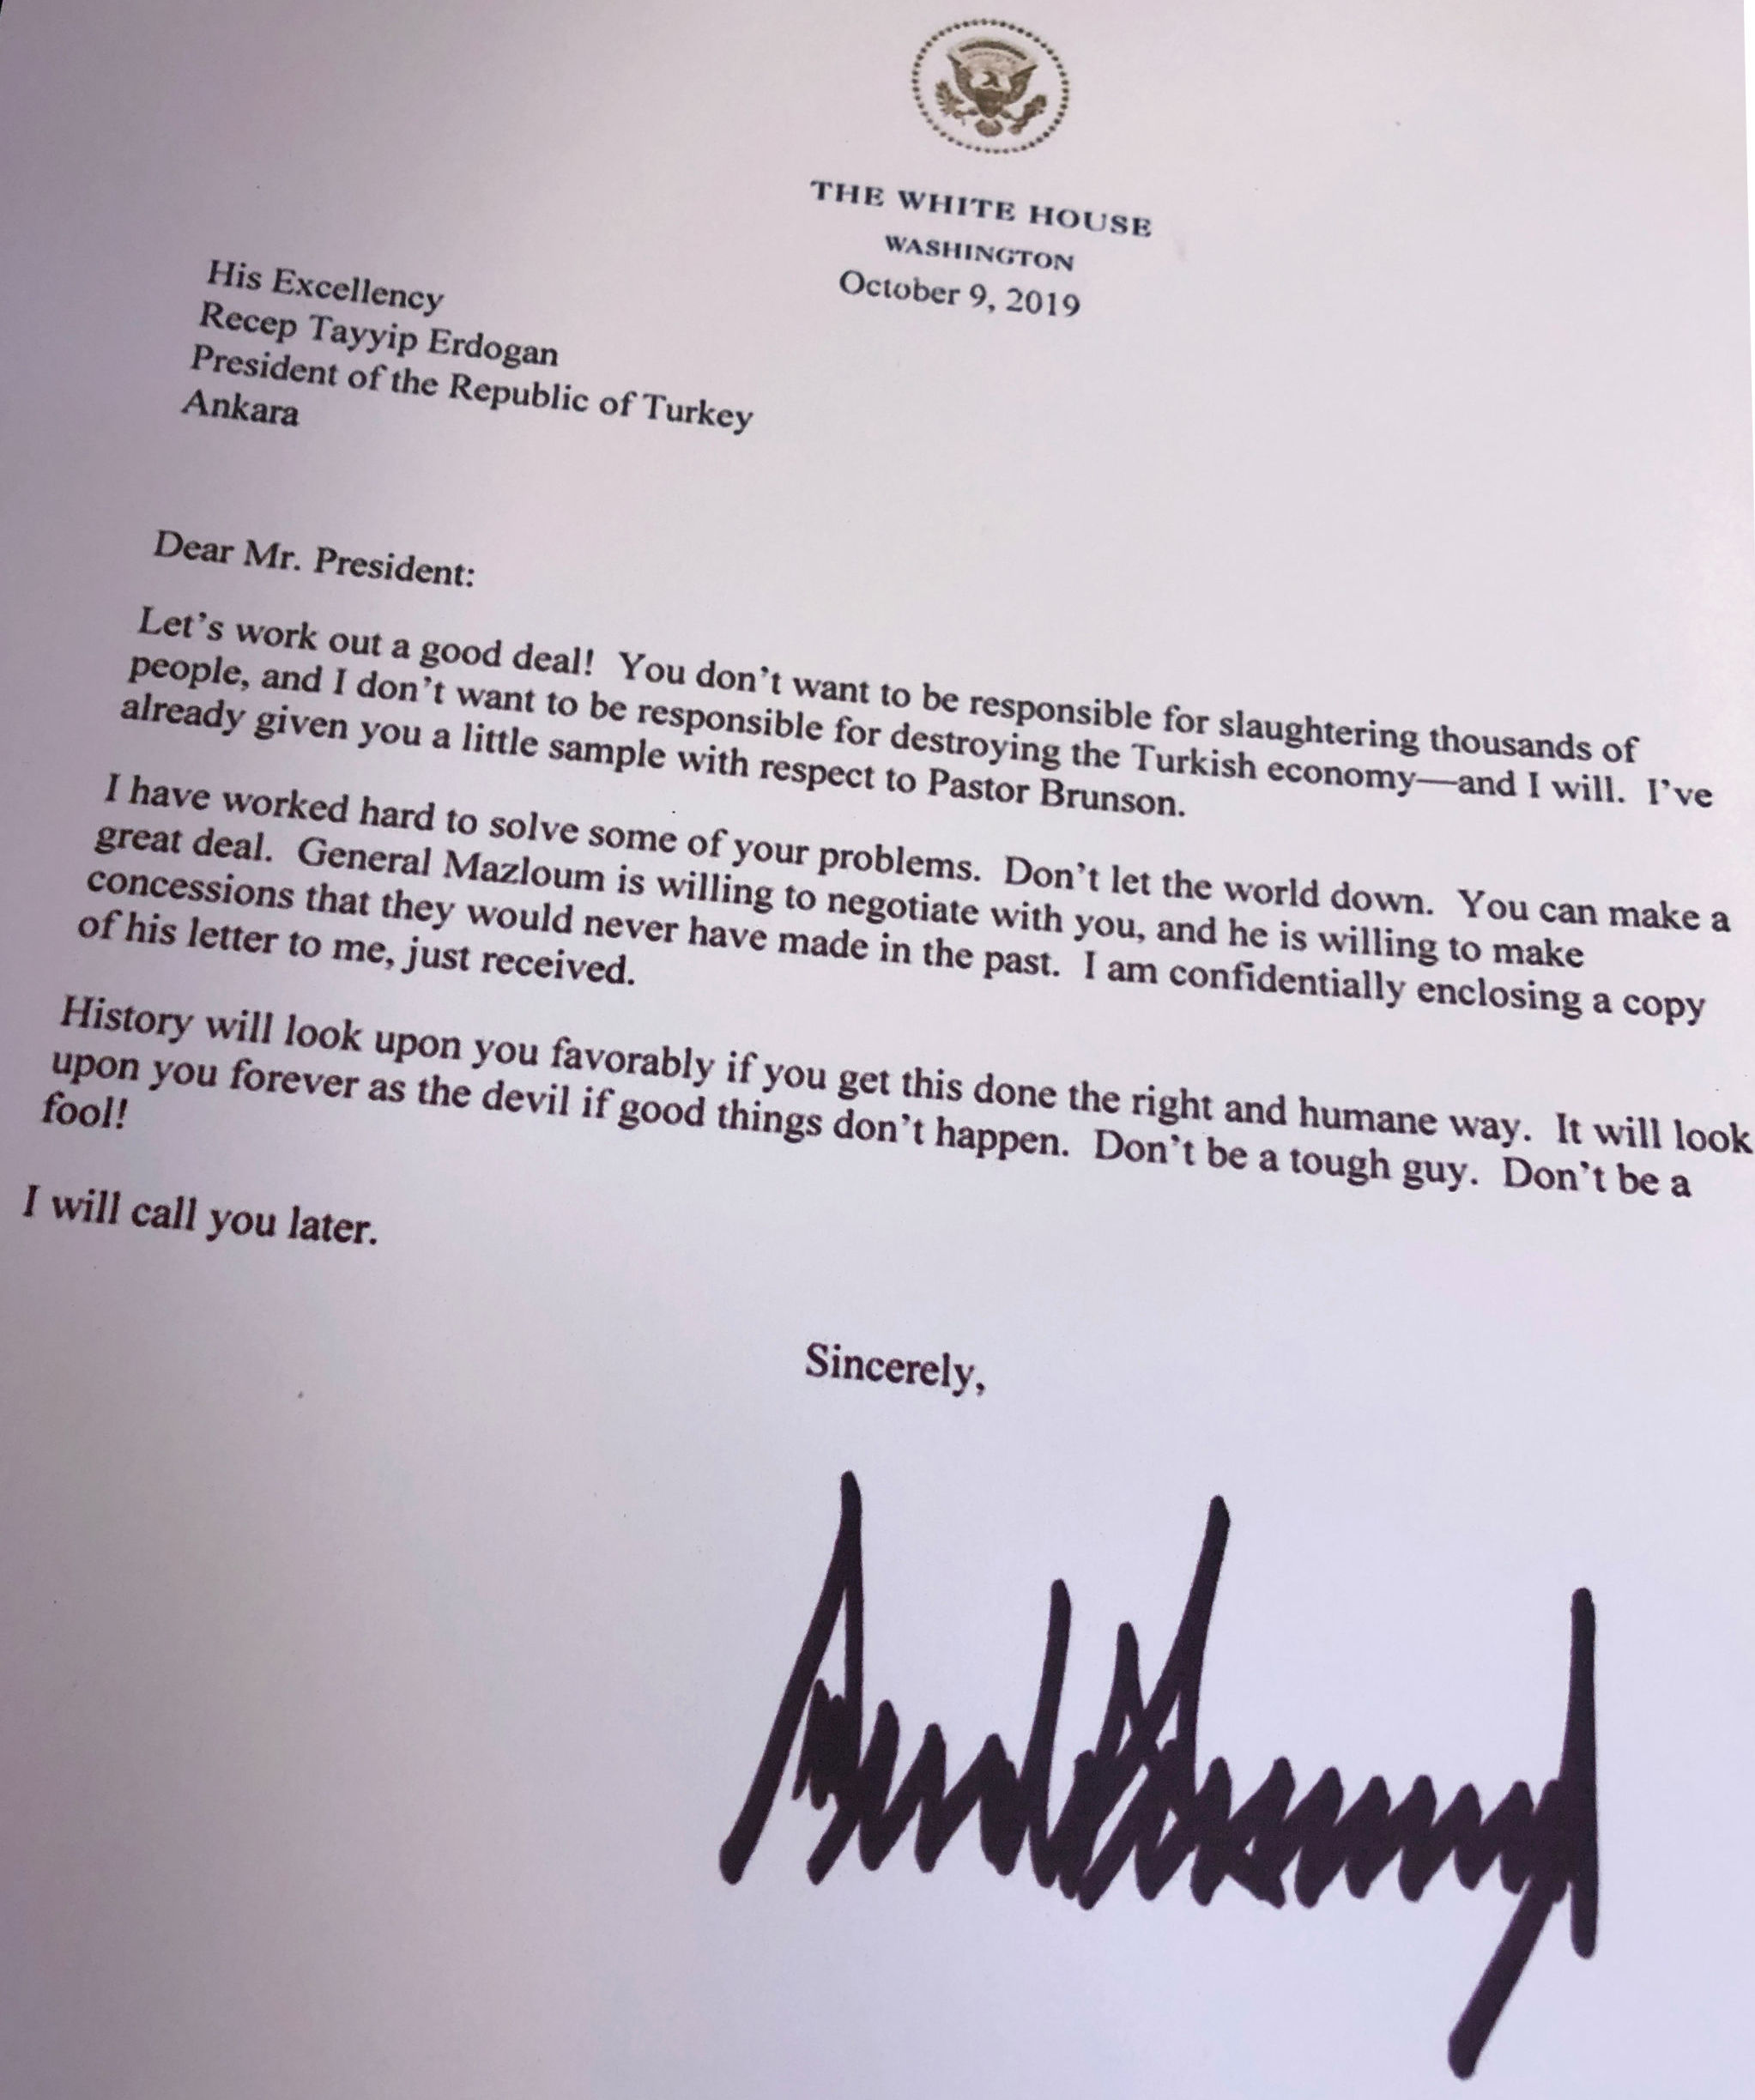 Carta enviada pelo Presidente Donald Trump ao seu homólogo turco Recep Tayyip Erdogan